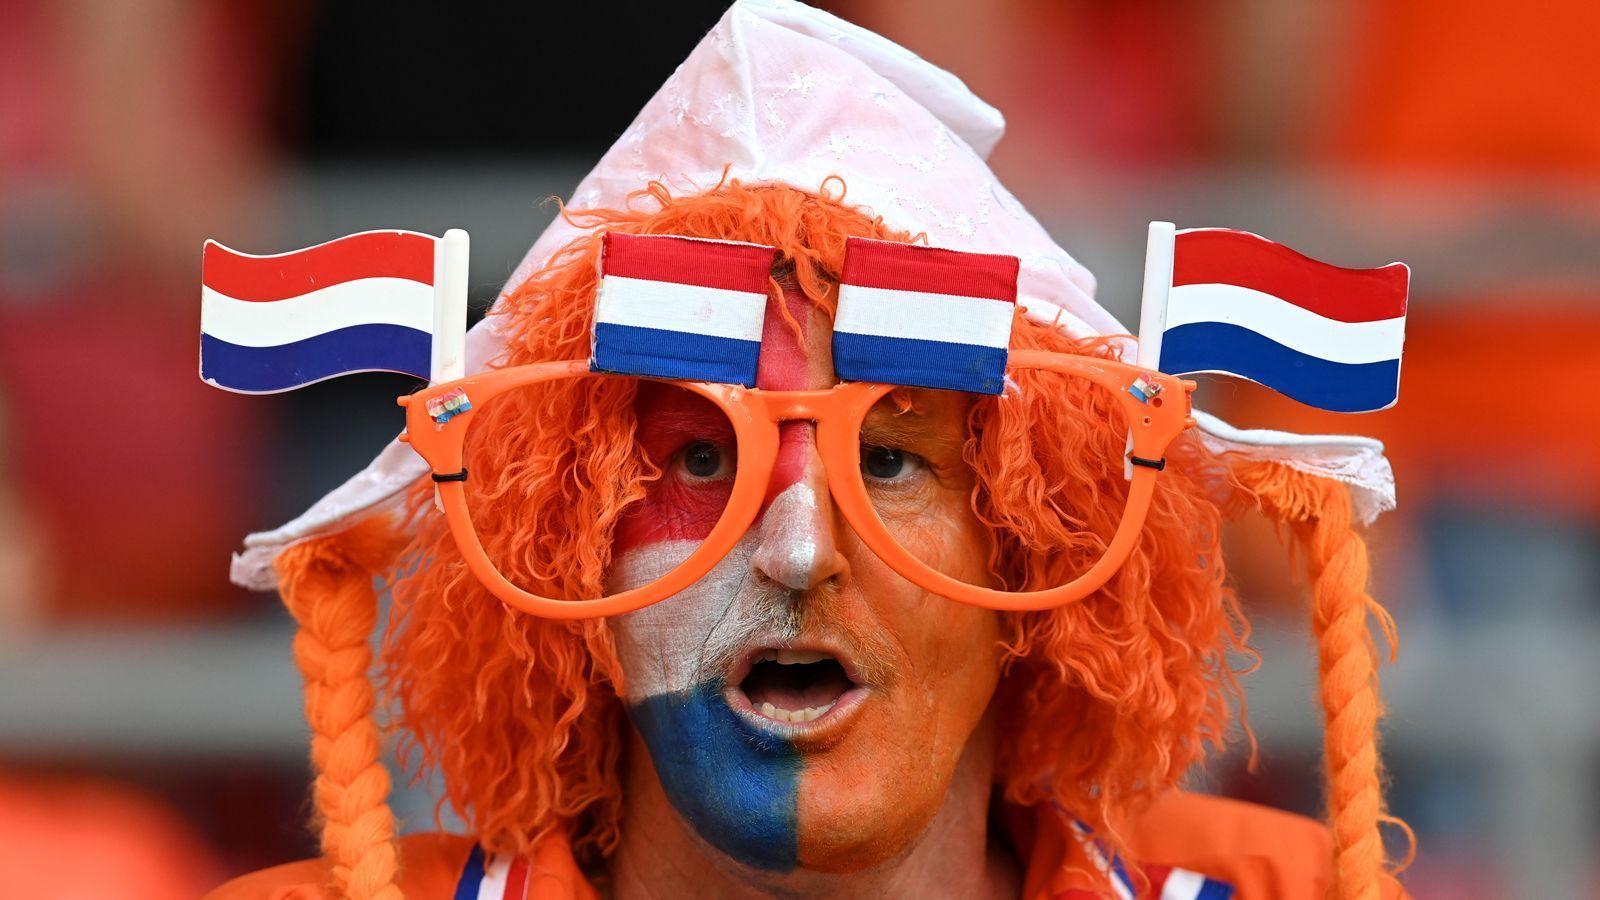 
                <strong>Oranje im EM-Fieber</strong><br>
                Die niederländischen Fans waren zum Auftakt der EM-Endrunde natürlich farblich in den Oranje-Farben.
              